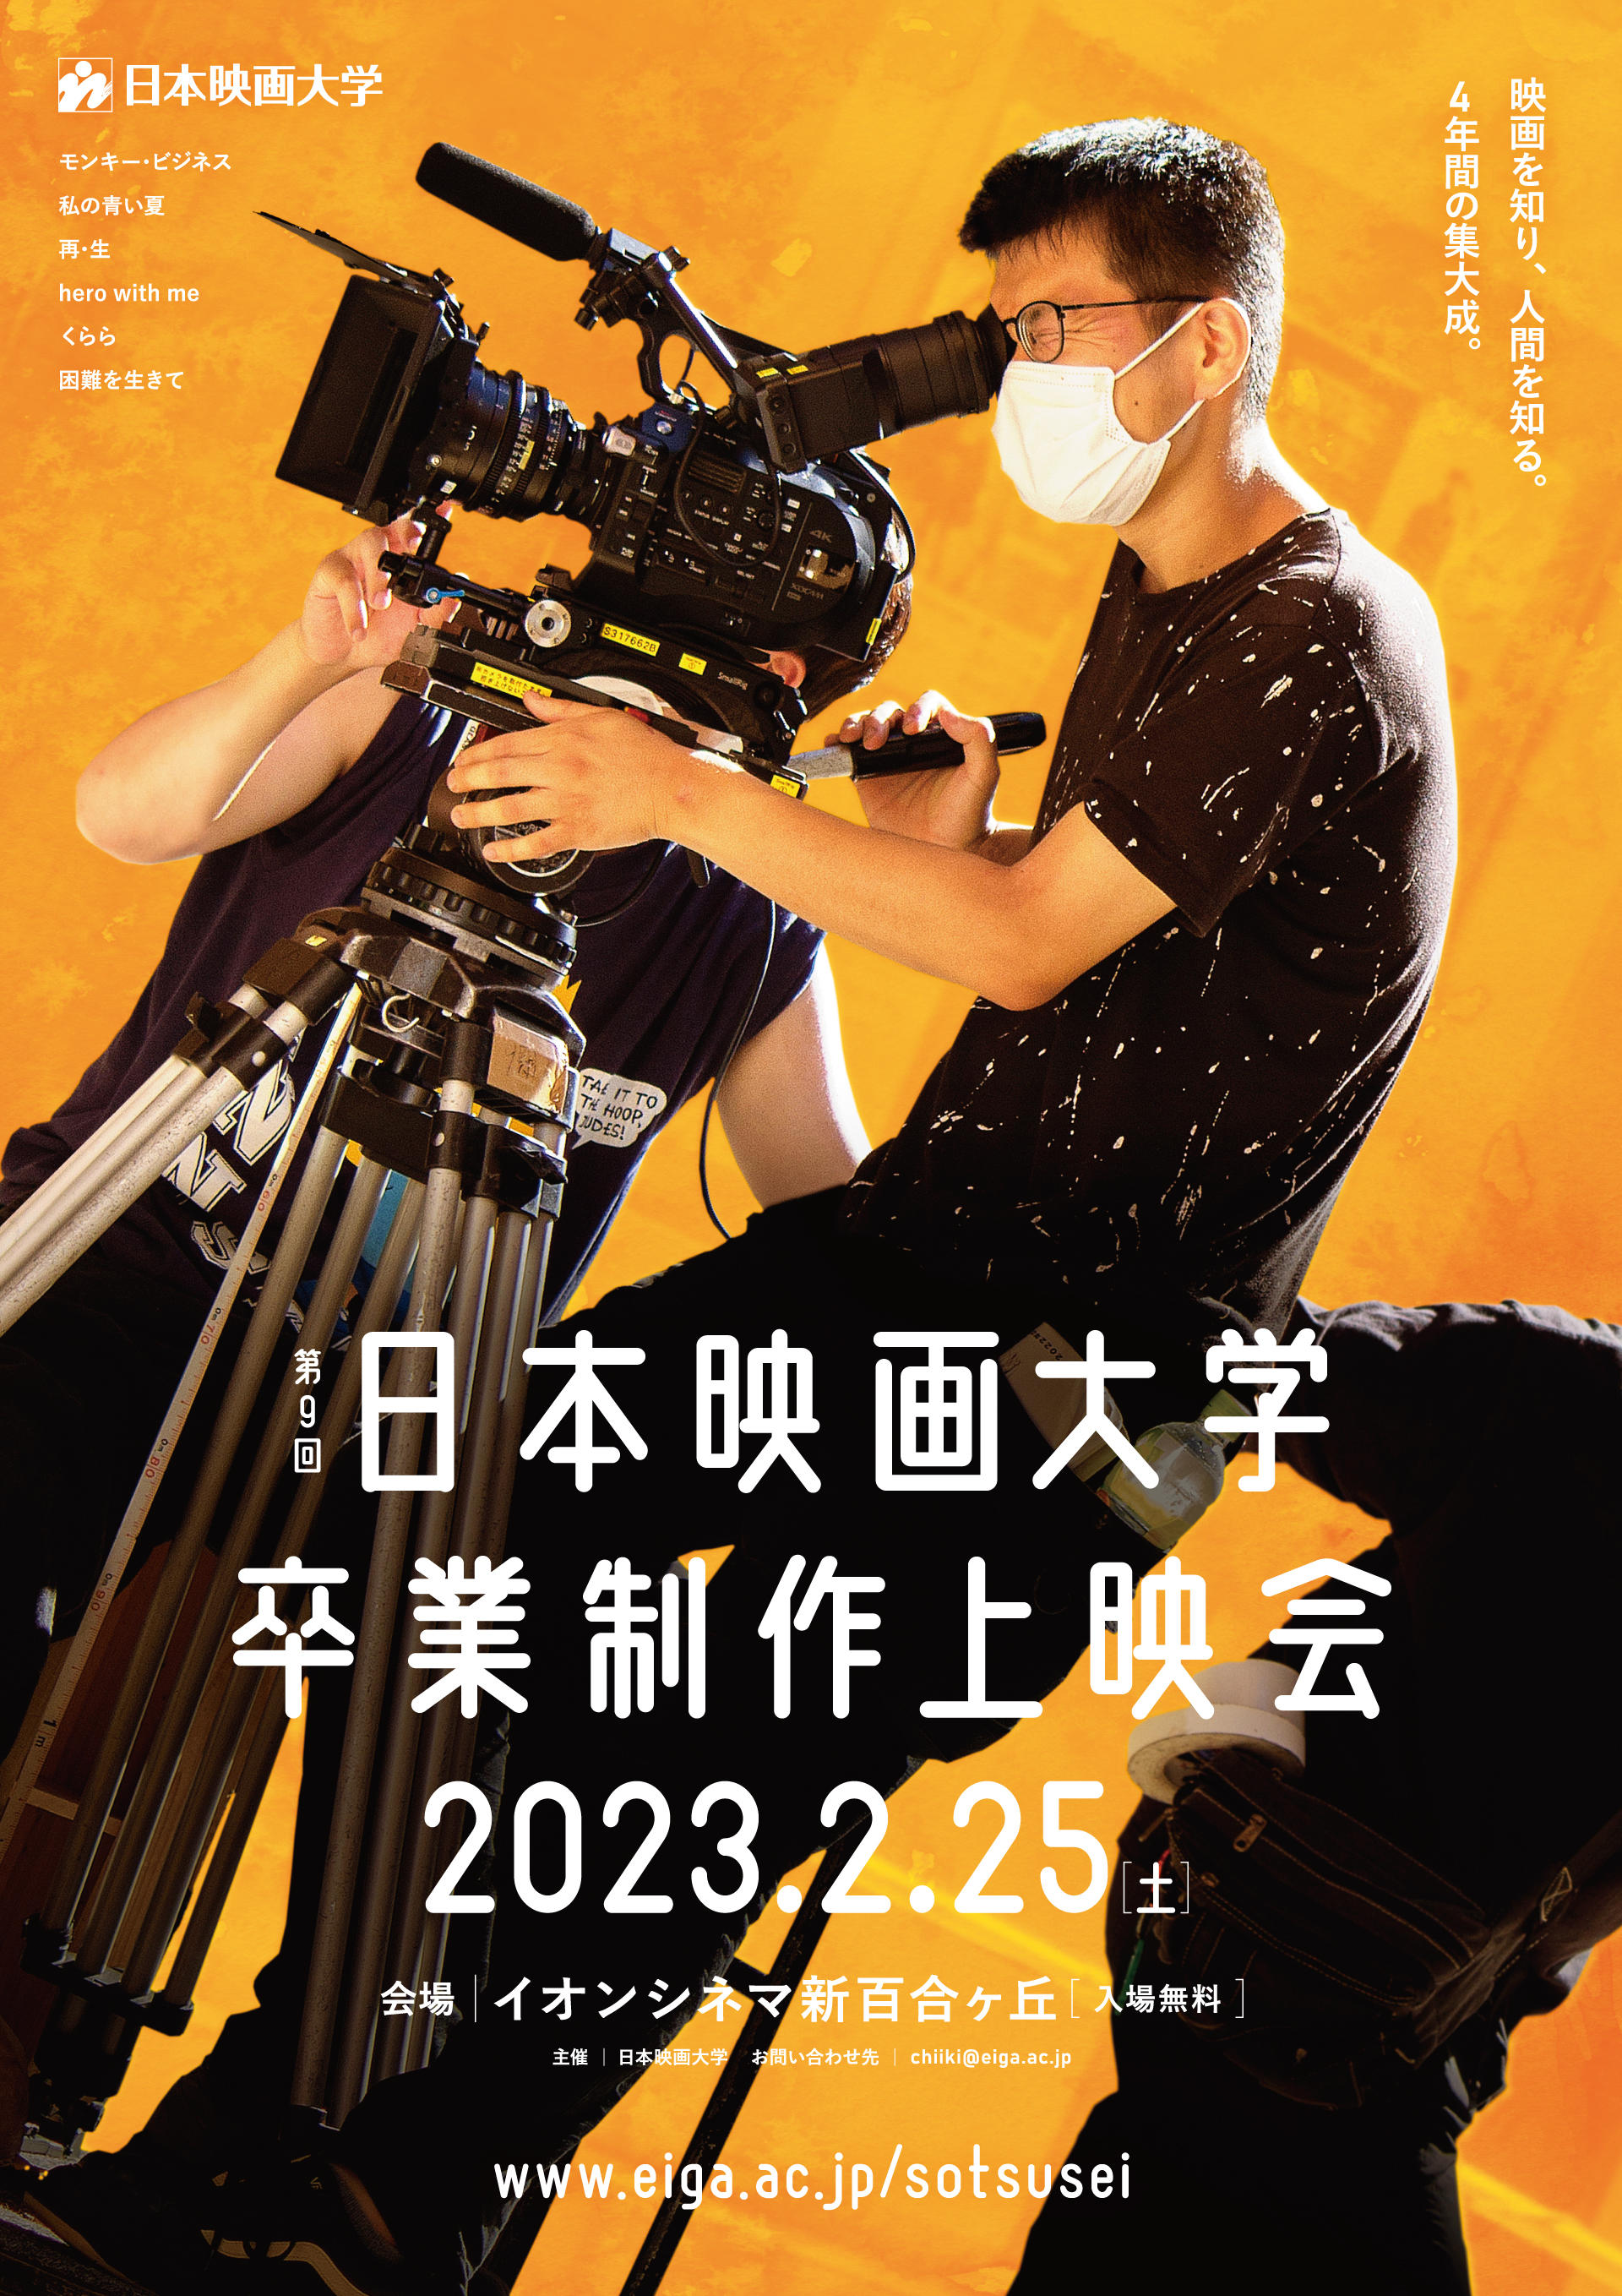 日本映画大学が2月25日に「第9回卒業制作上映会」を開催 -- 3年ぶりにイオンシネマ新百合ヶ丘で一般公開